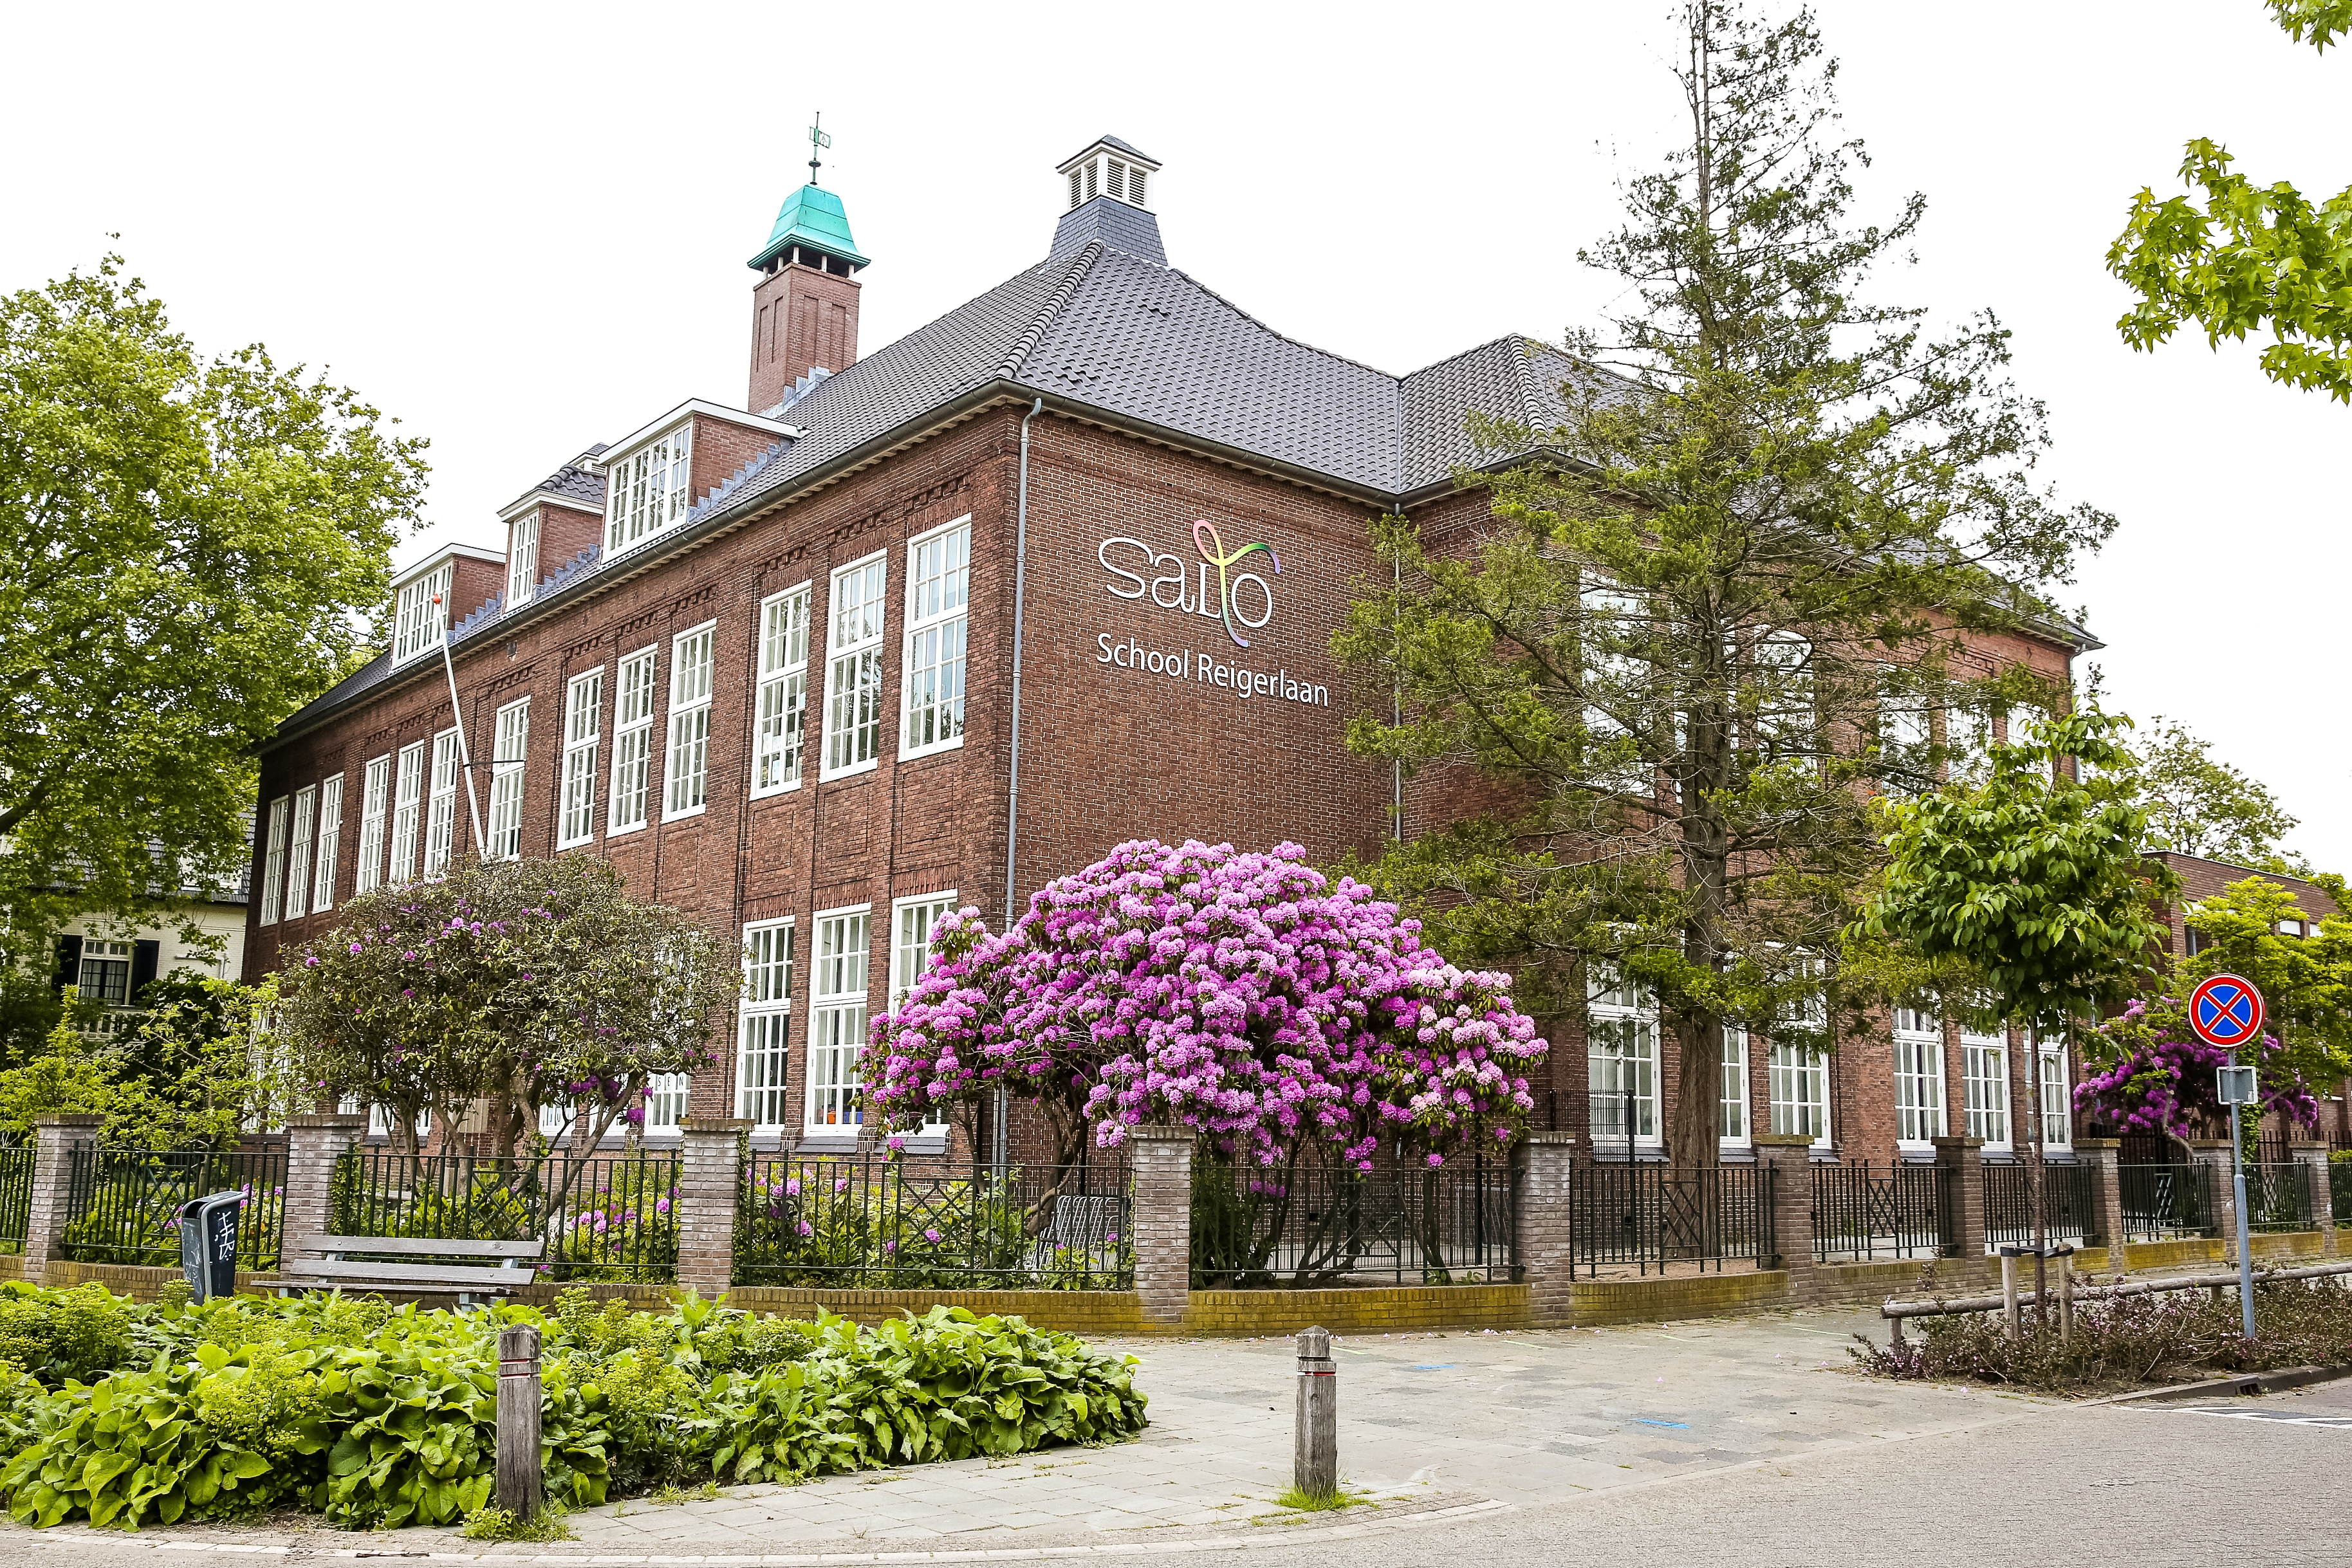 schoolgebouw SALTO-school Reigerlaan